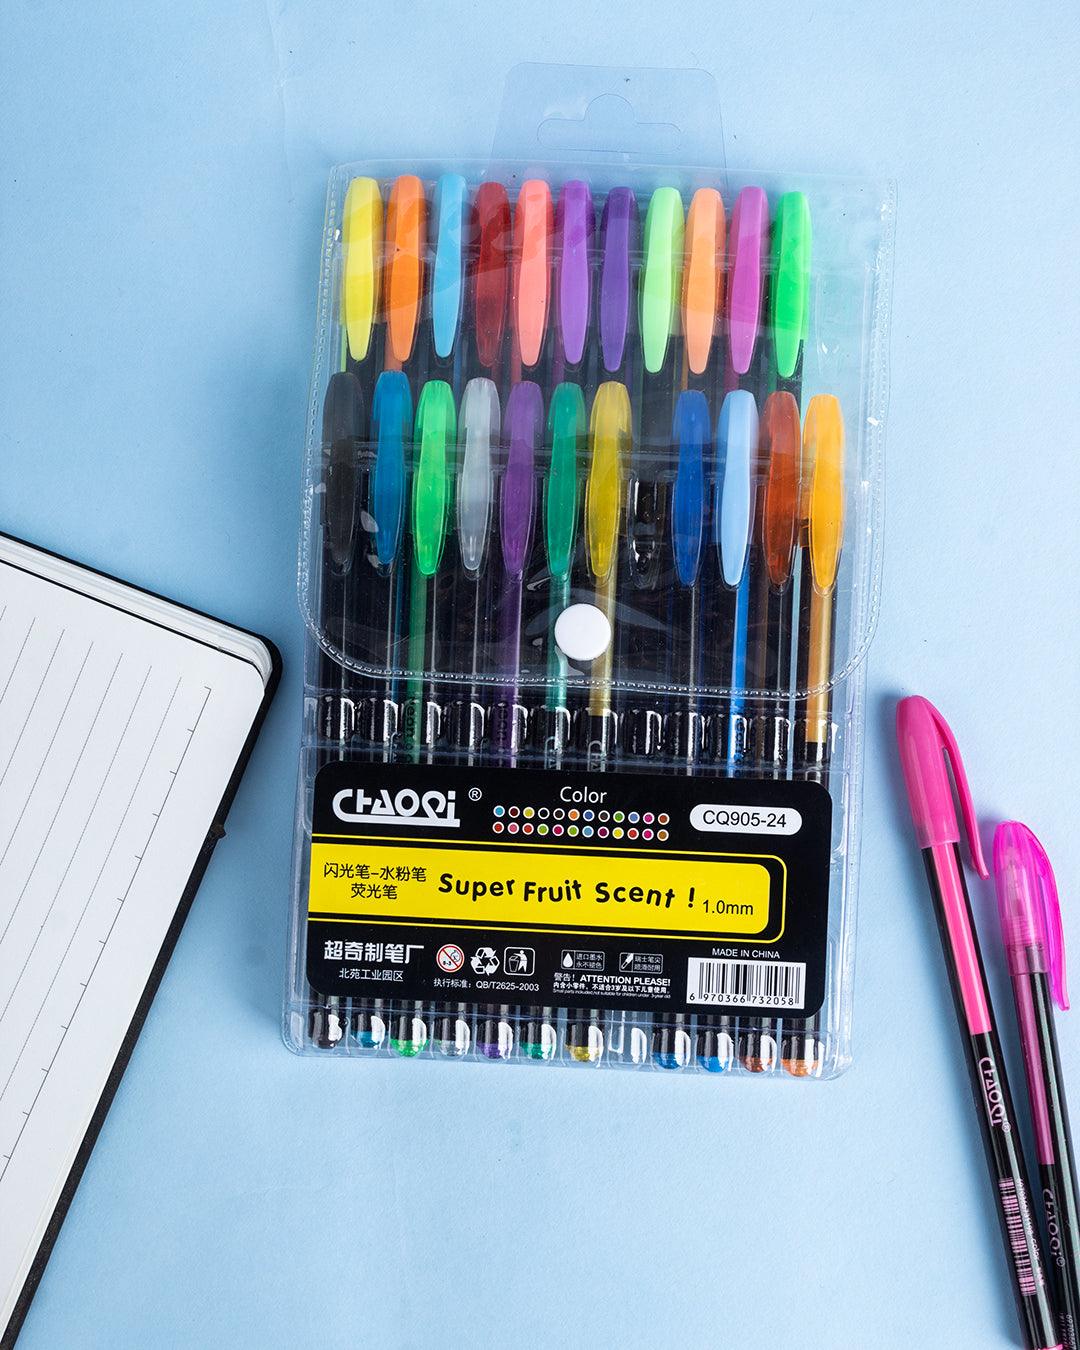 Colour Pens, Multicolour, Plastic, Set of 24 - MARKET 99